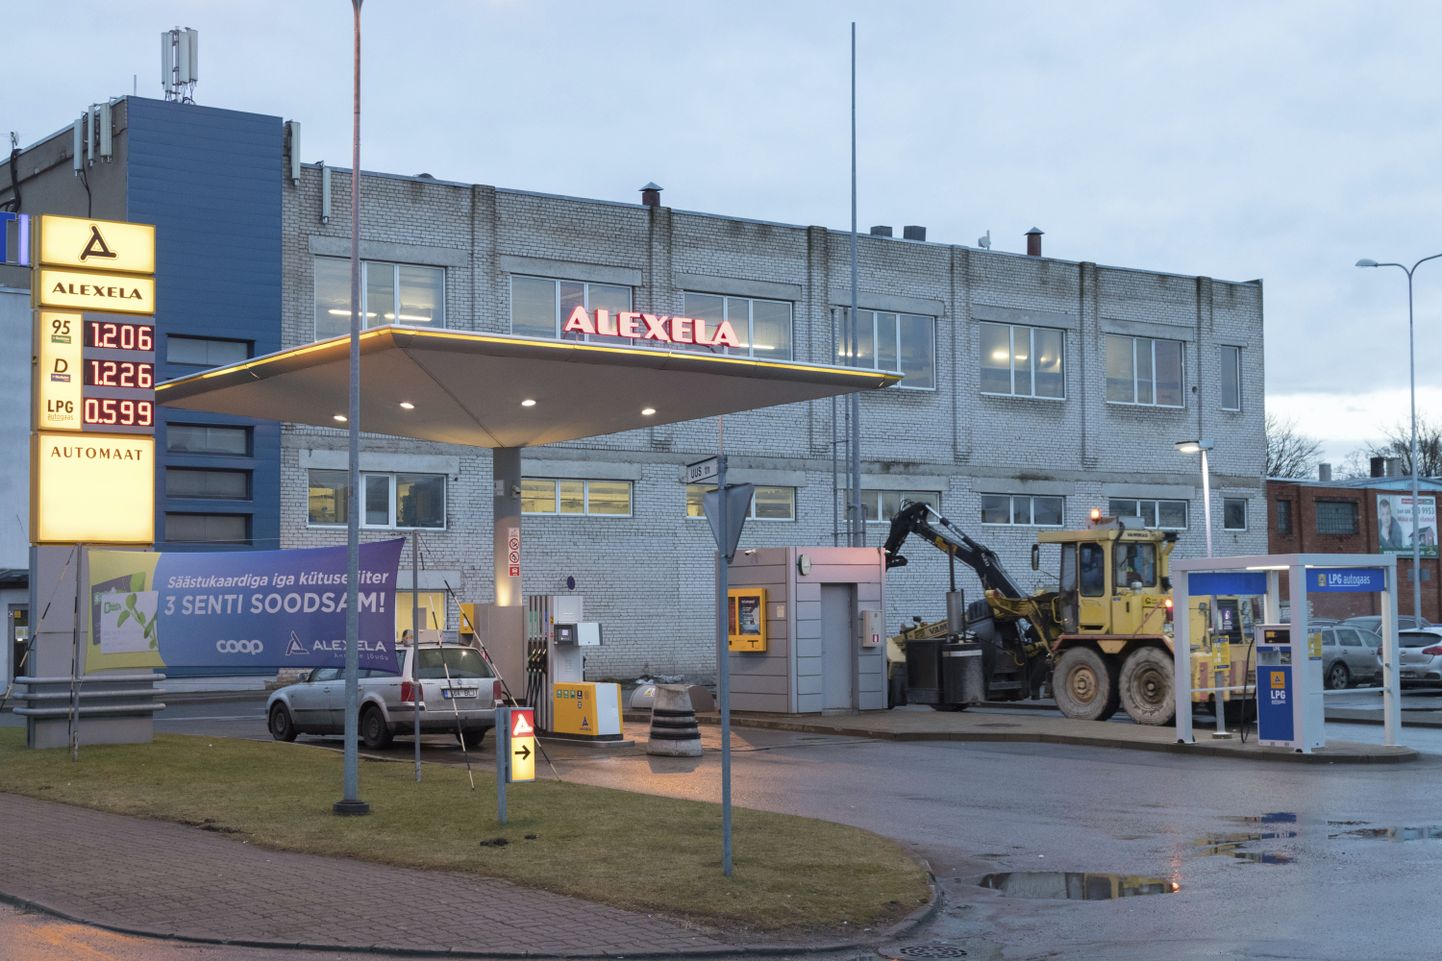 Alexelal on praegu Viljandis üks tankla, mis asub Centrumi kaubanduskeskuse taga.